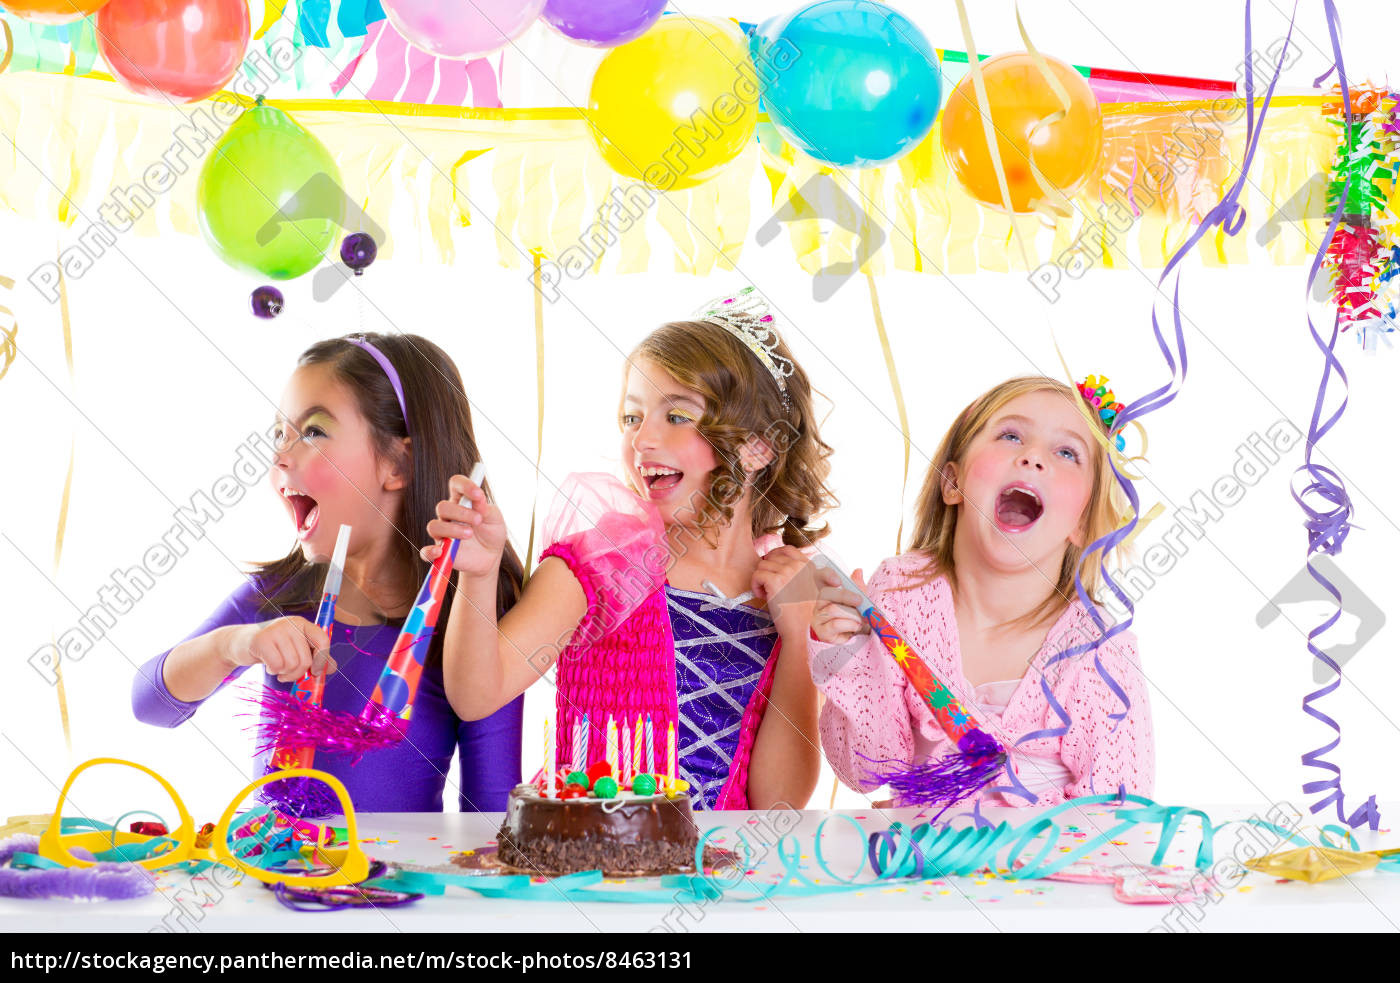 Geburtstagsparty Bilder
 kinder kind in geburtstagsparty tanzen gerne lachen